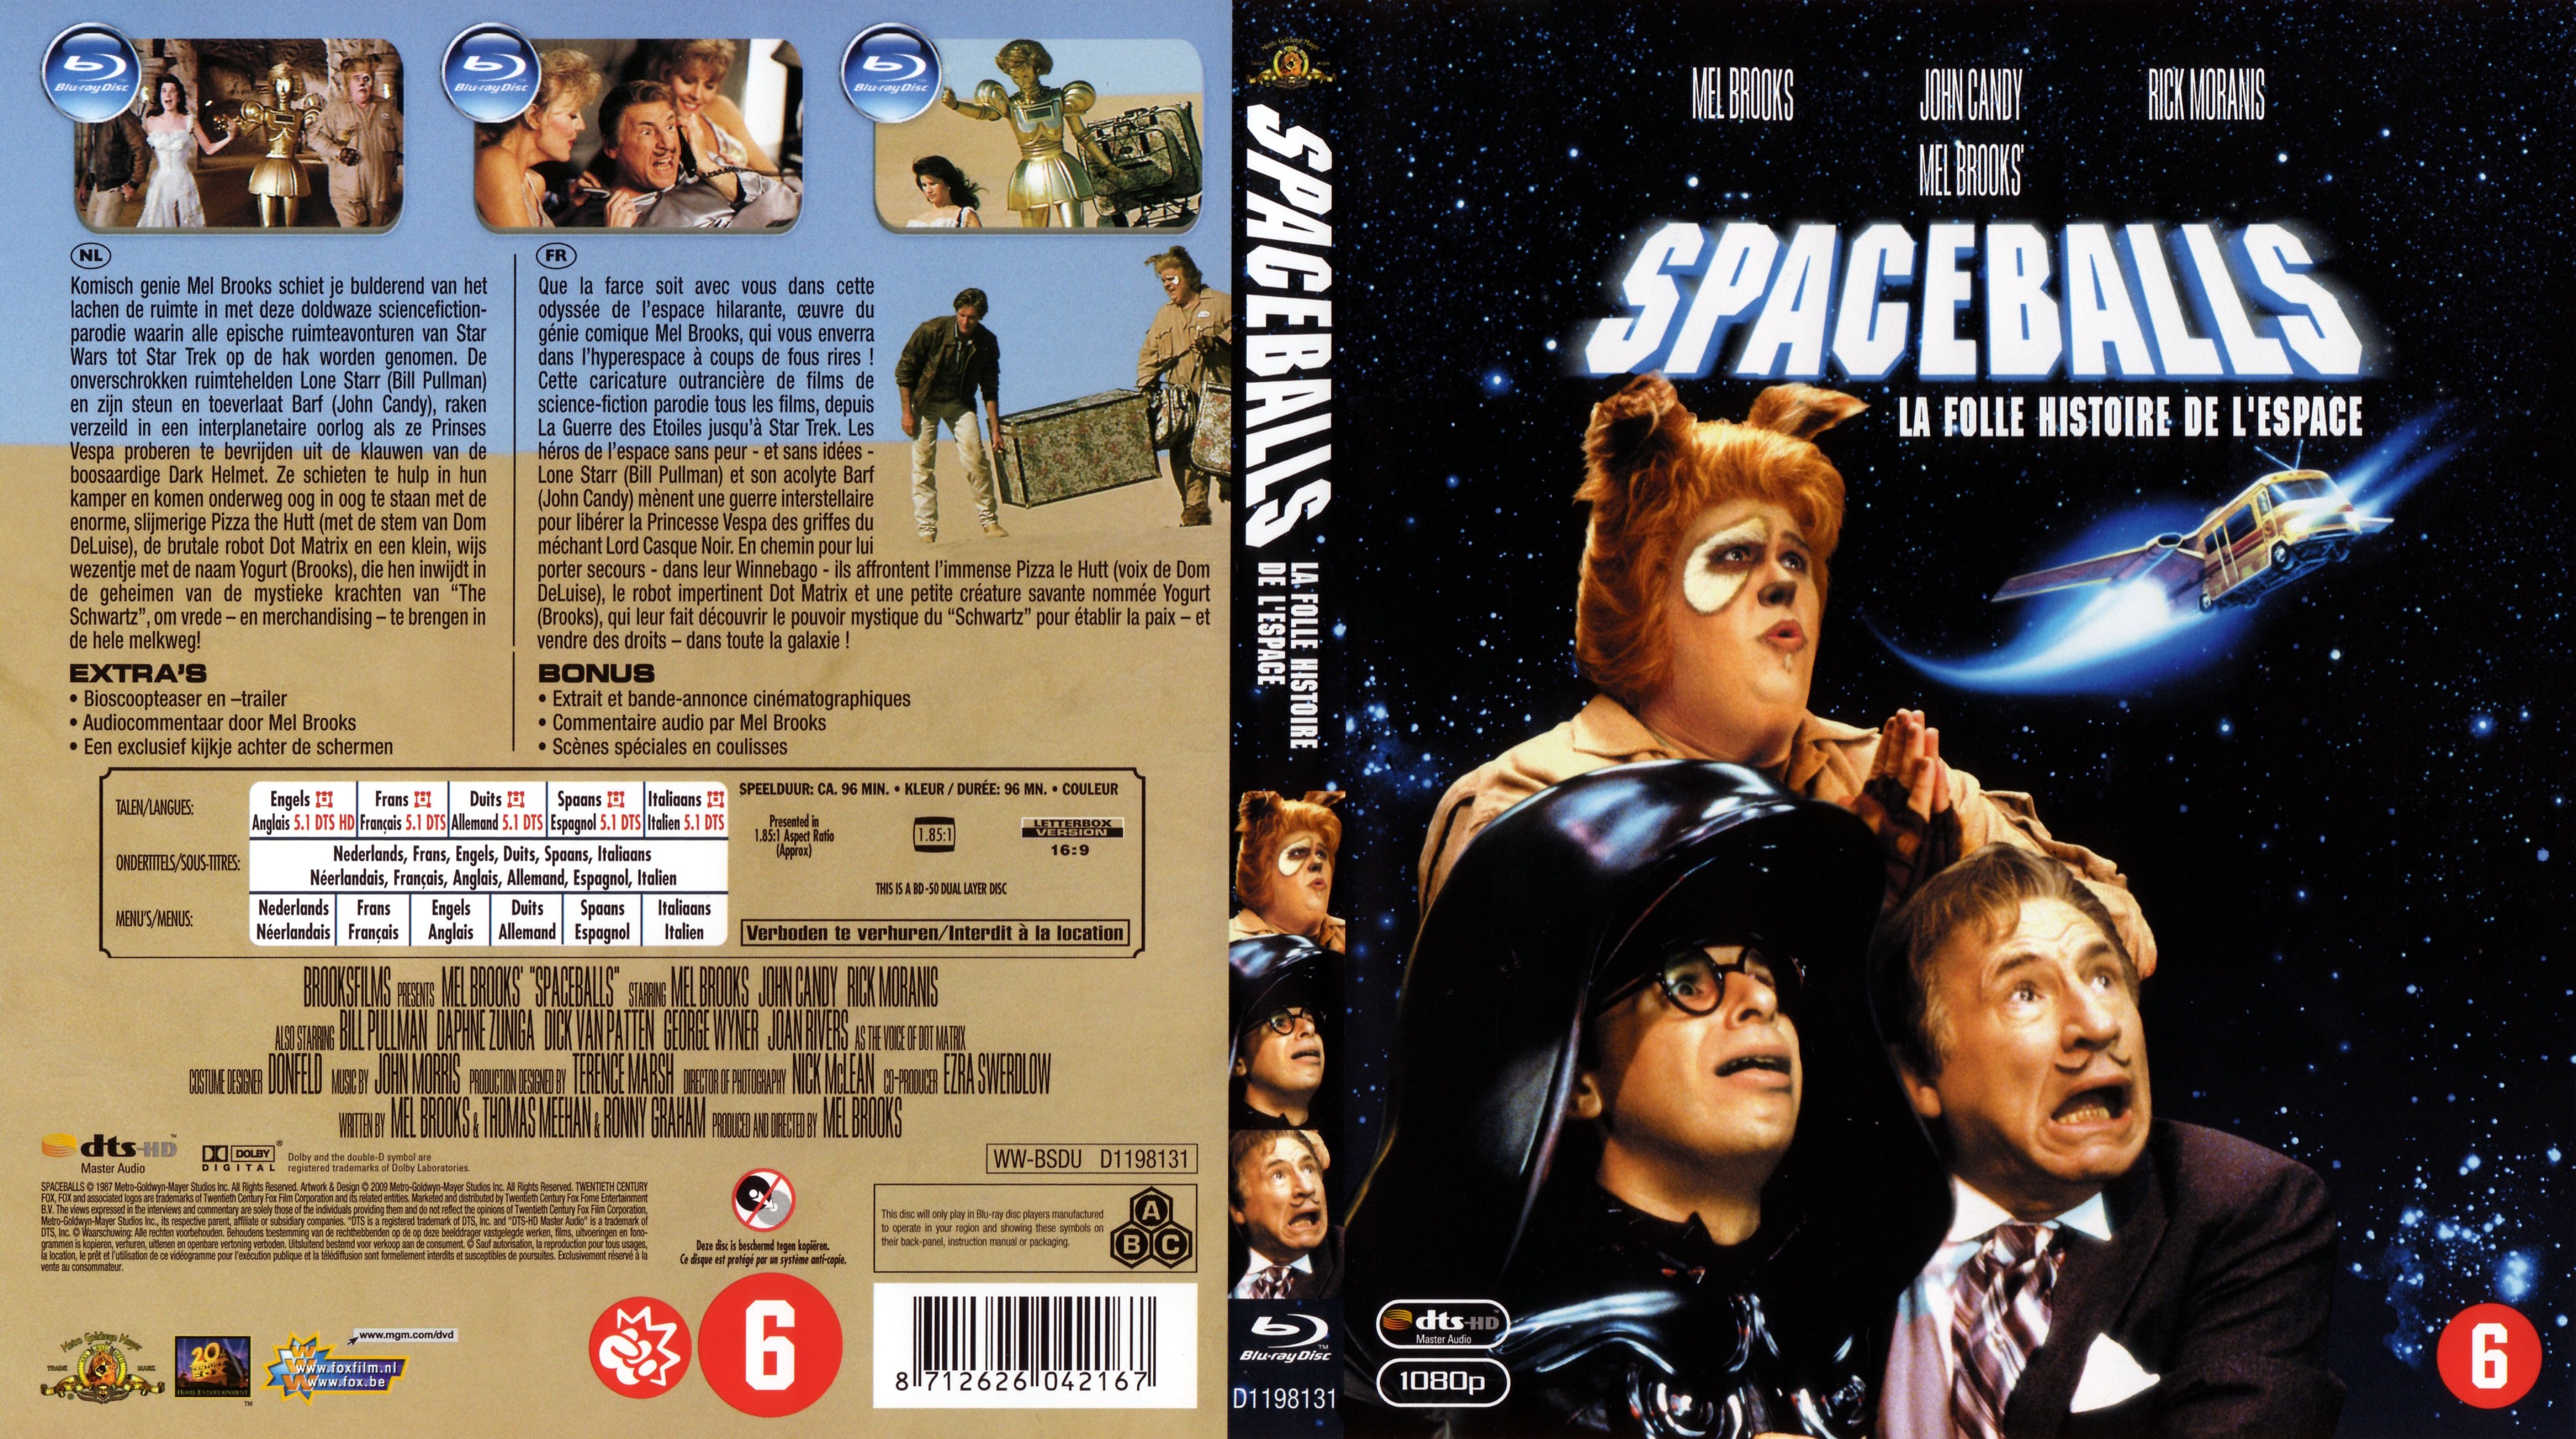 Jaquette DVD Spaceballs la folle histoire de l